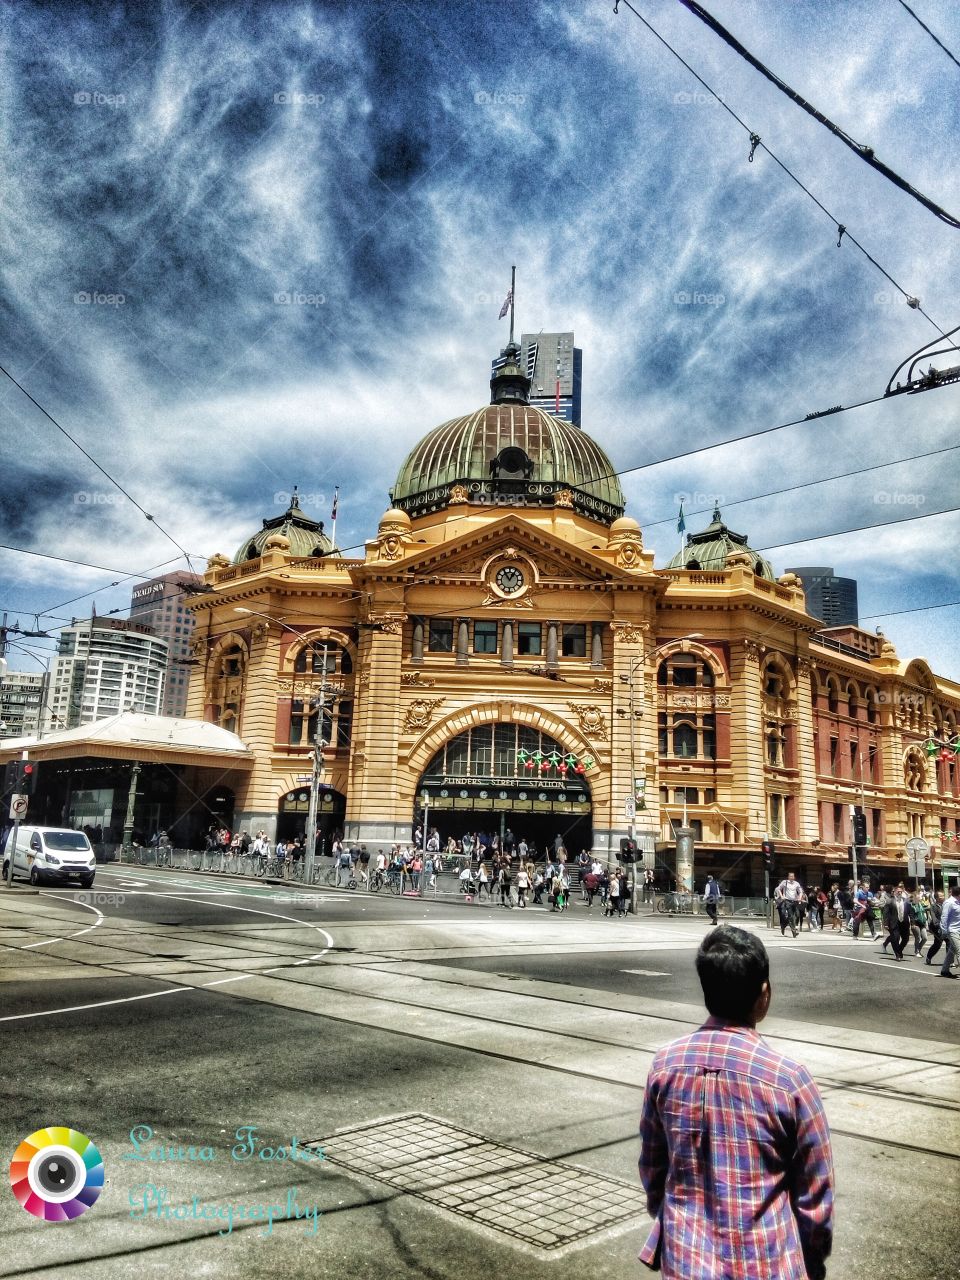 Flinders Street station in Melbourne Victoria